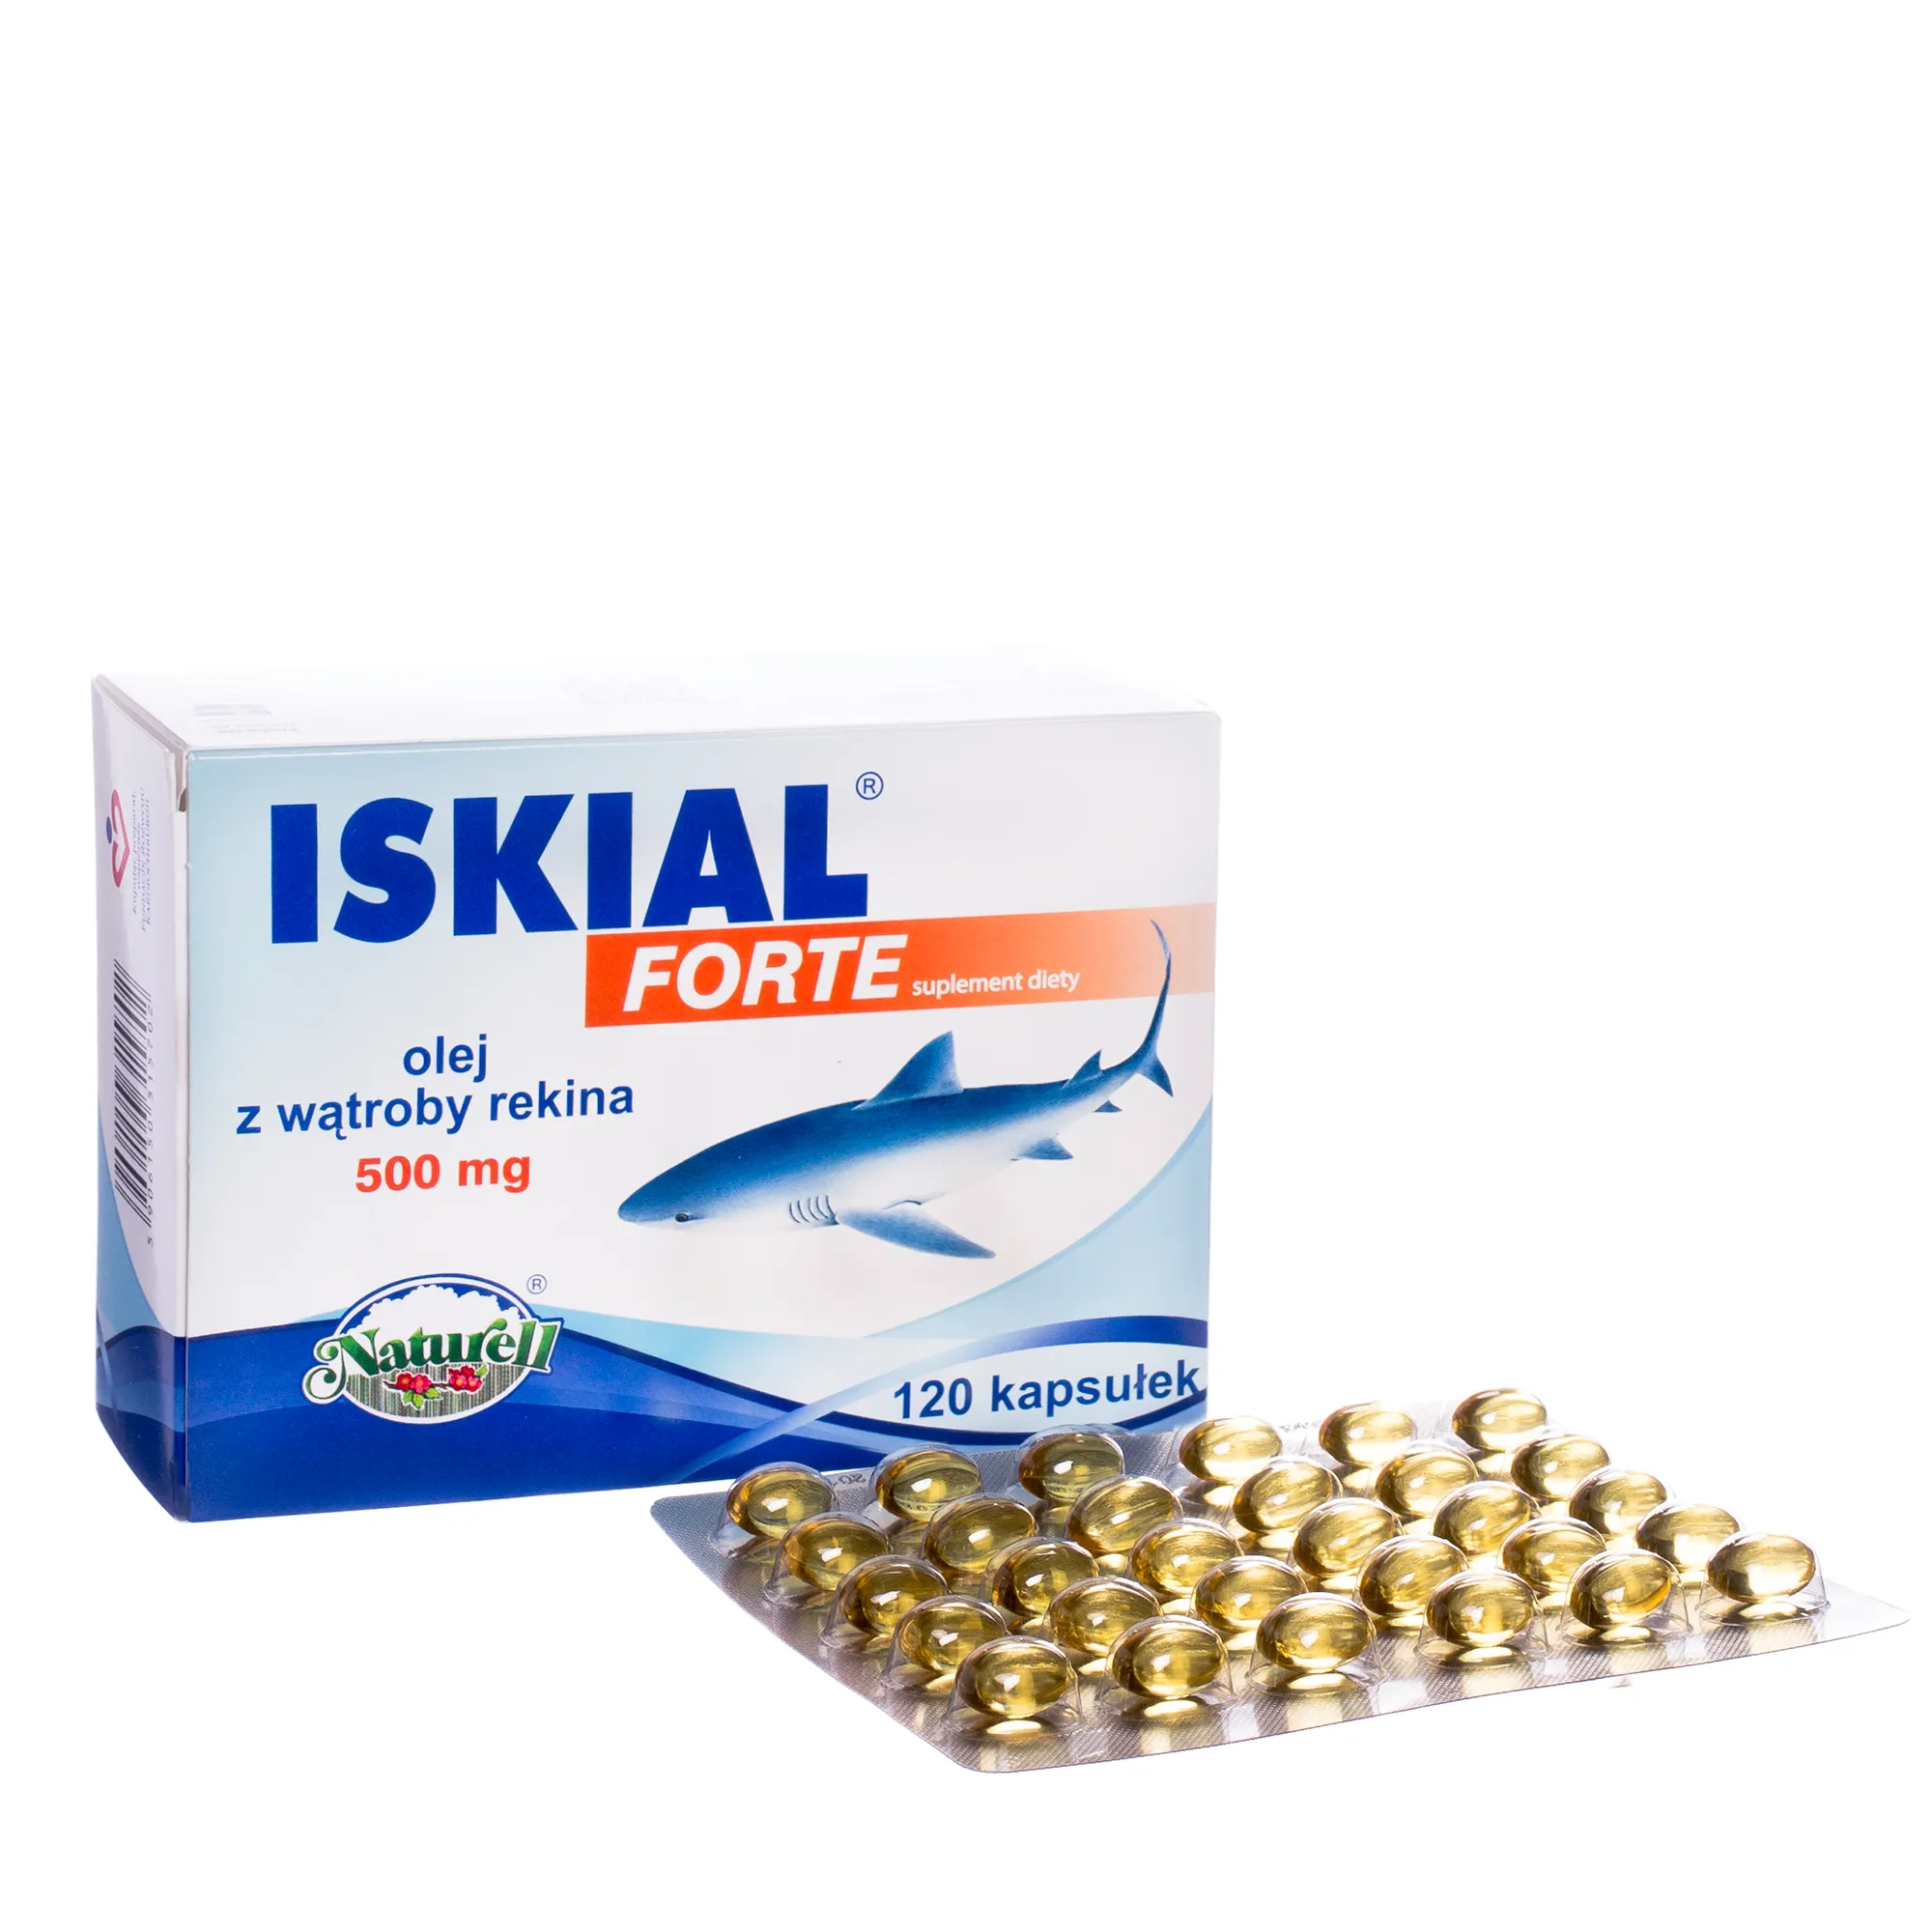 ISKIAL FORTE 500 mg - suplement diety w postaci oleju z wątroby rekina, 120 kapsułek 